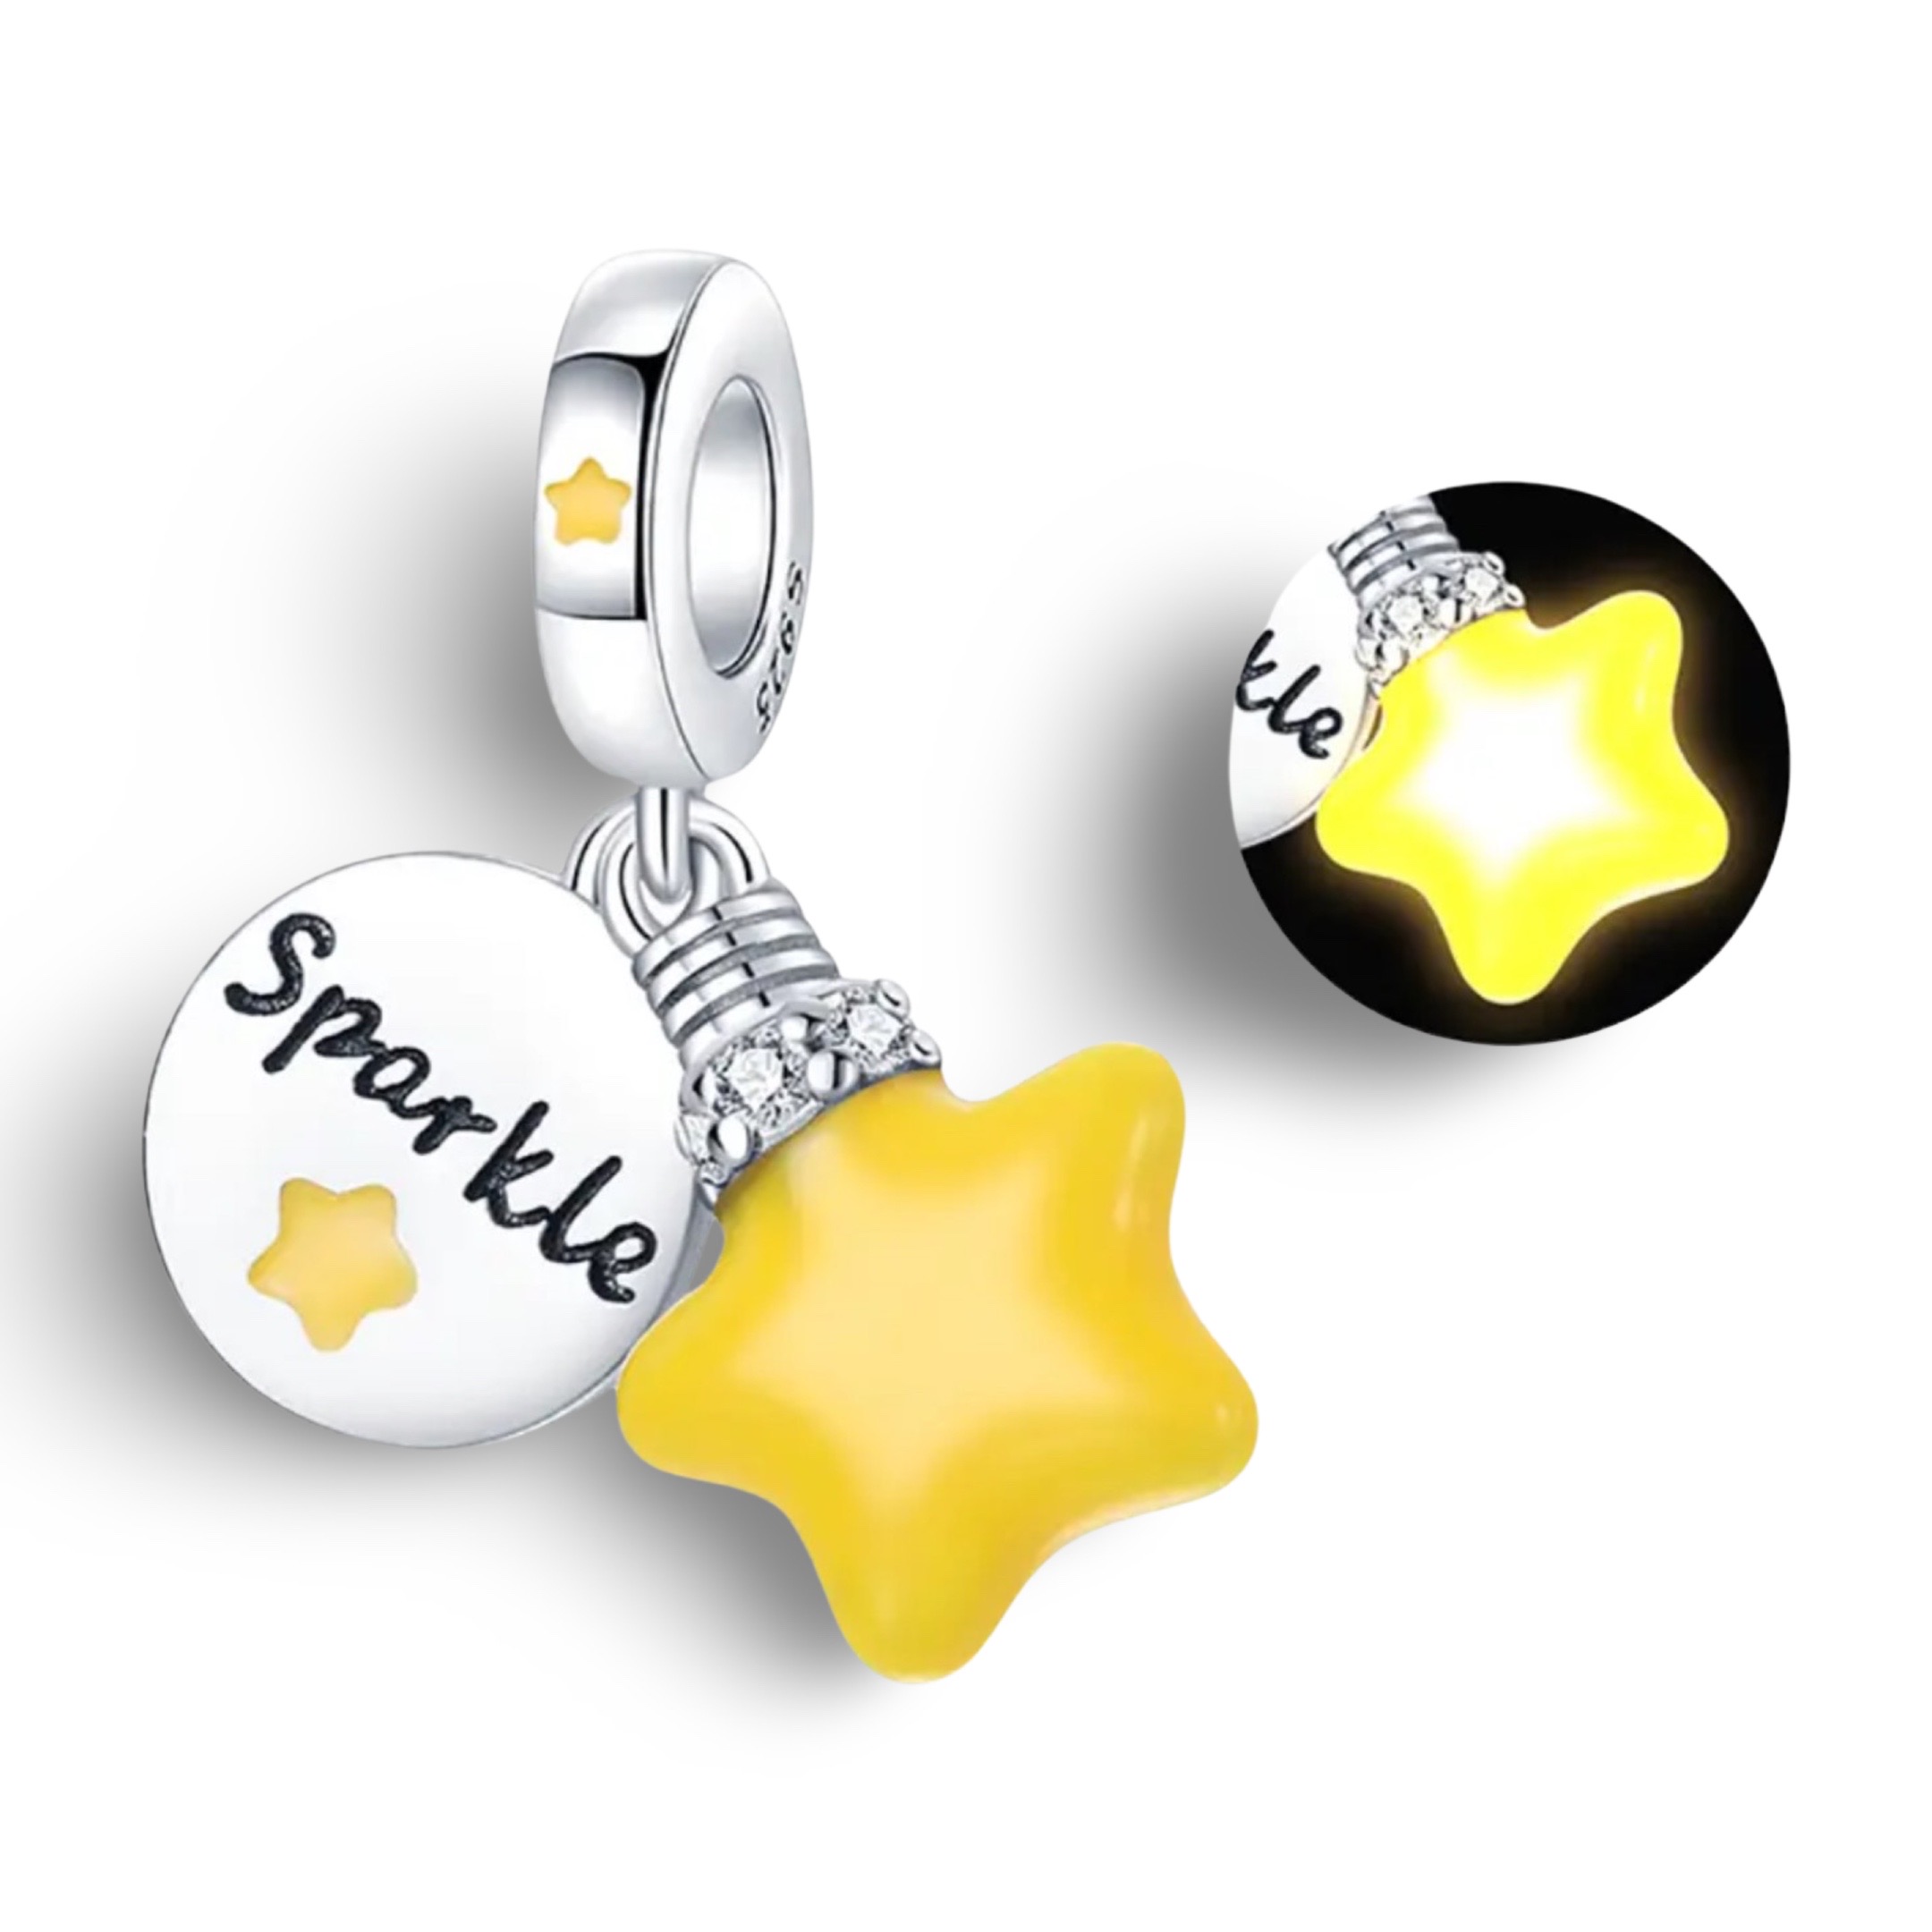 Product Afbeelding Vooraanzicht van onze prachtige nieuwe lieve sparkle ster. Deze ster is een glow in de dark bedel. De charm is ingelegd met gele sterretjes. Alles gemaakt van 925 sterling zilver.